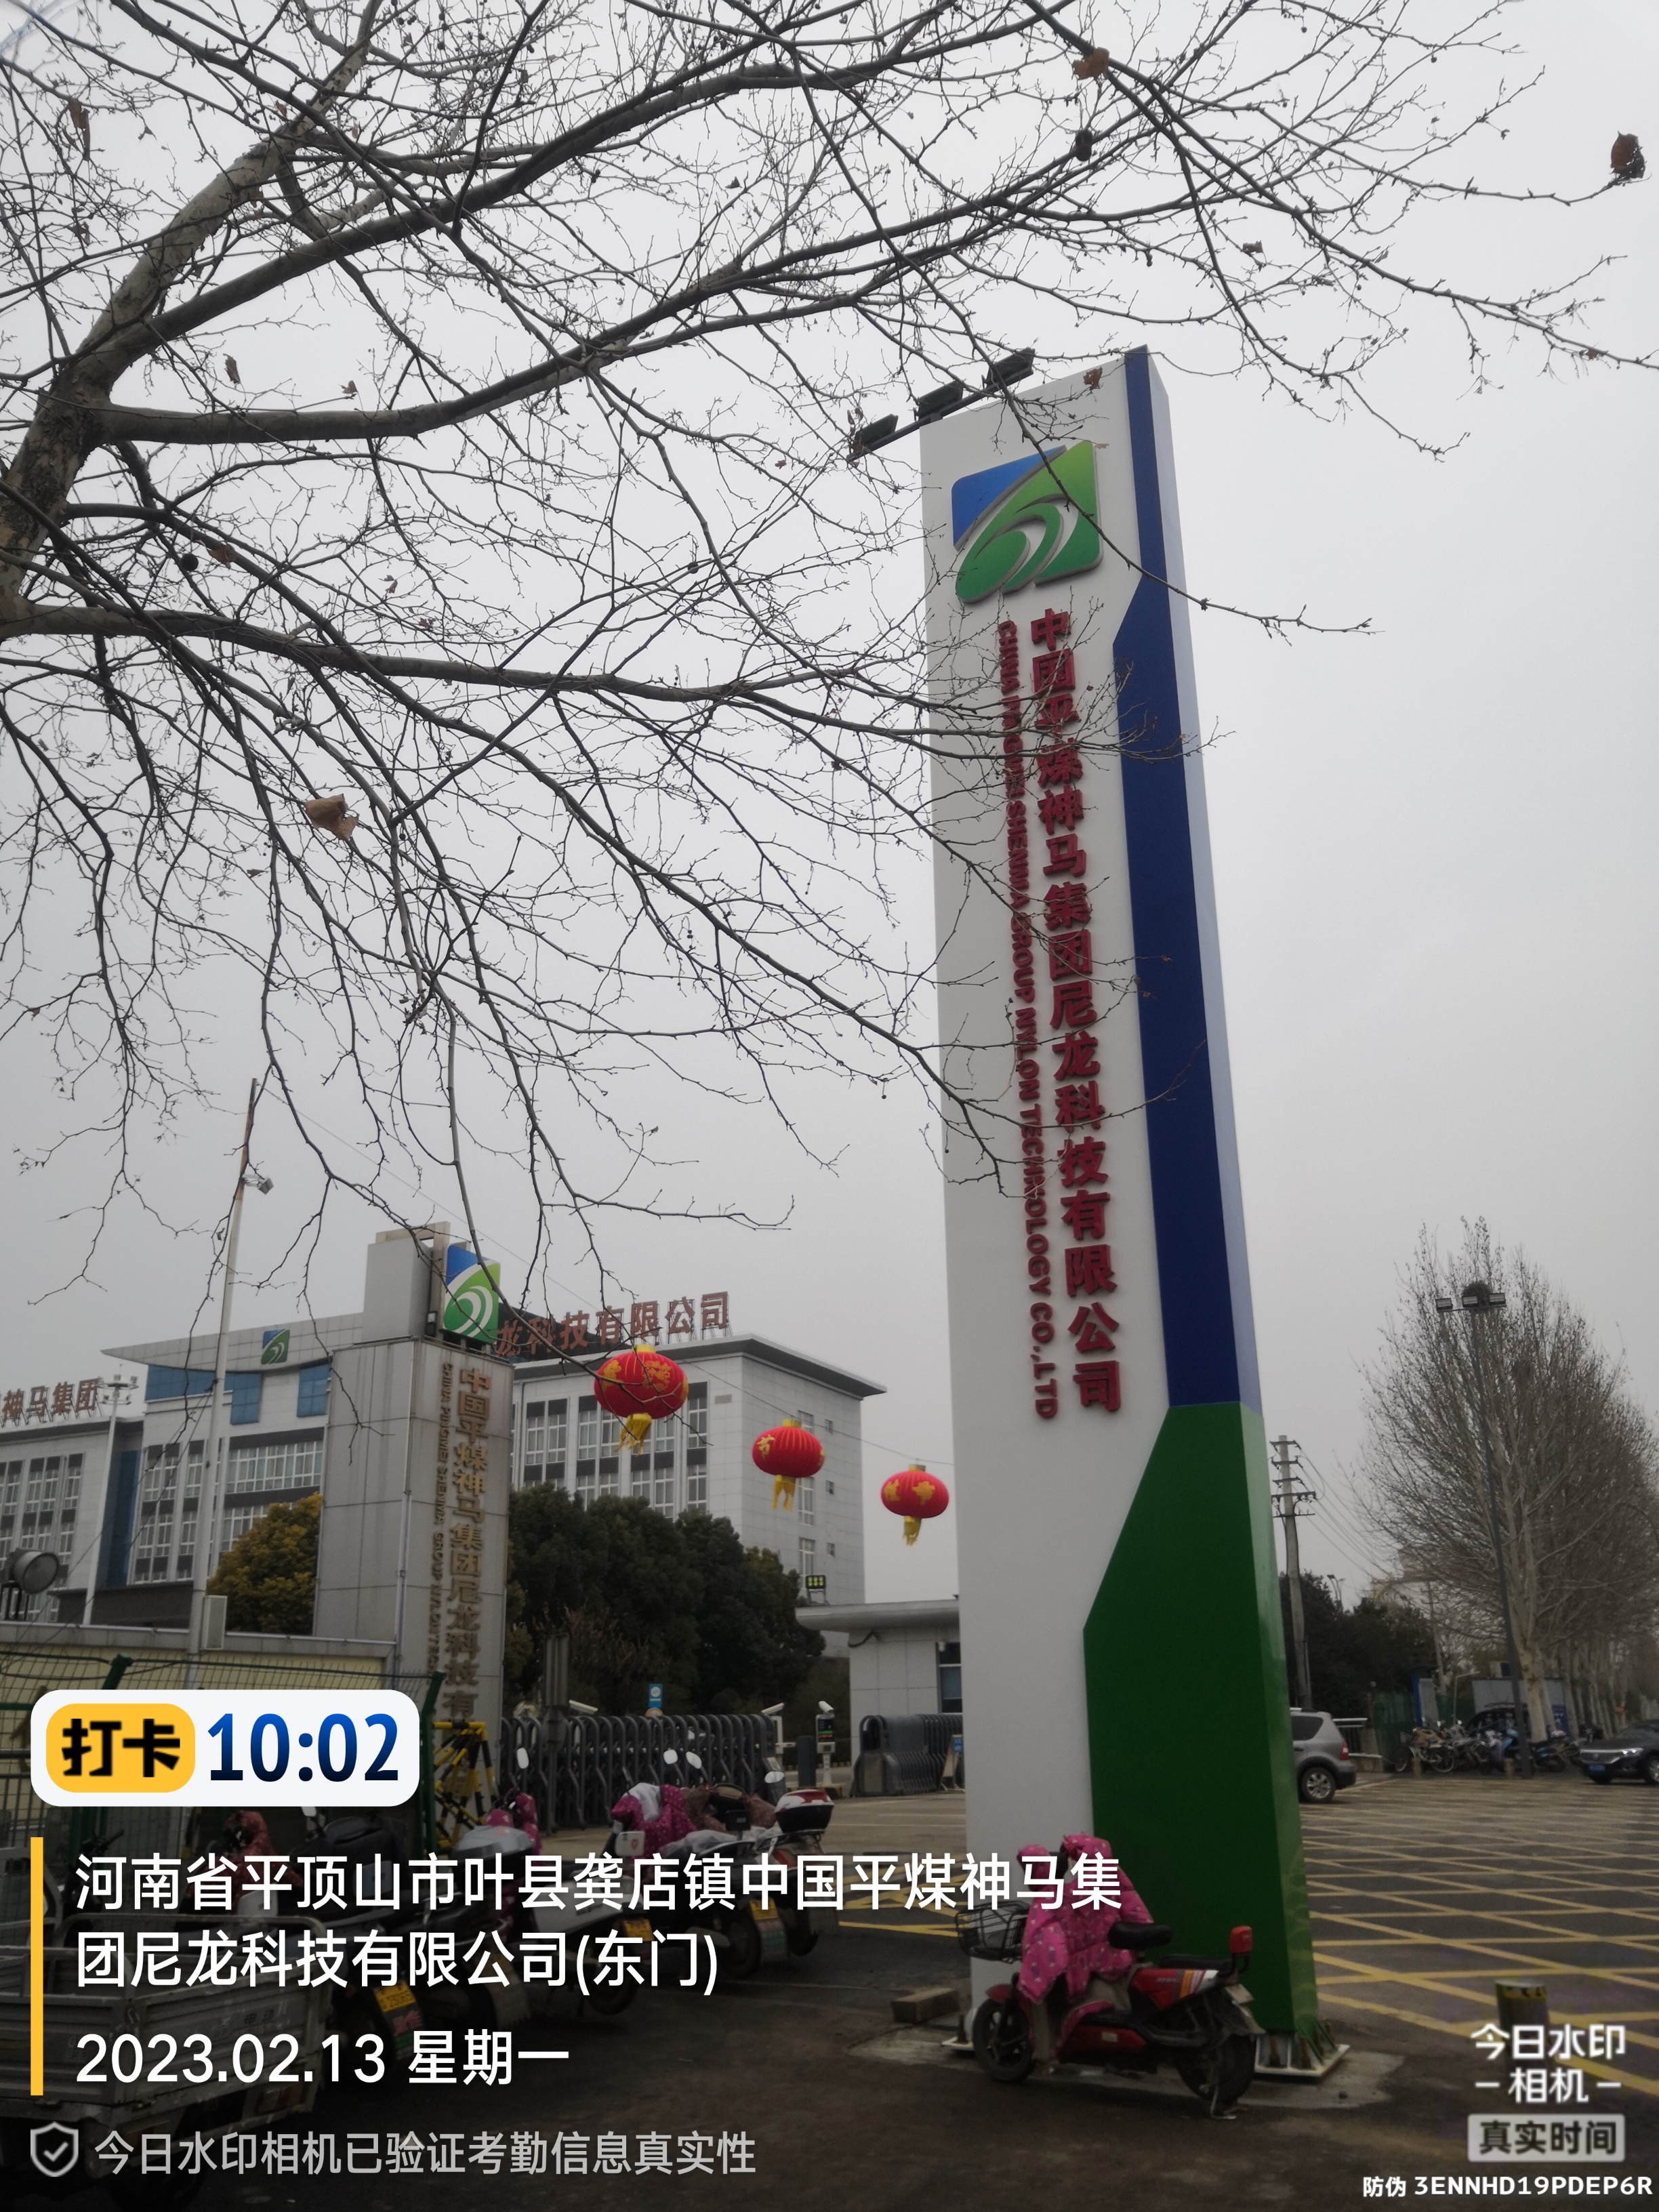 中國平煤神馬集團尼龍科技有限公司